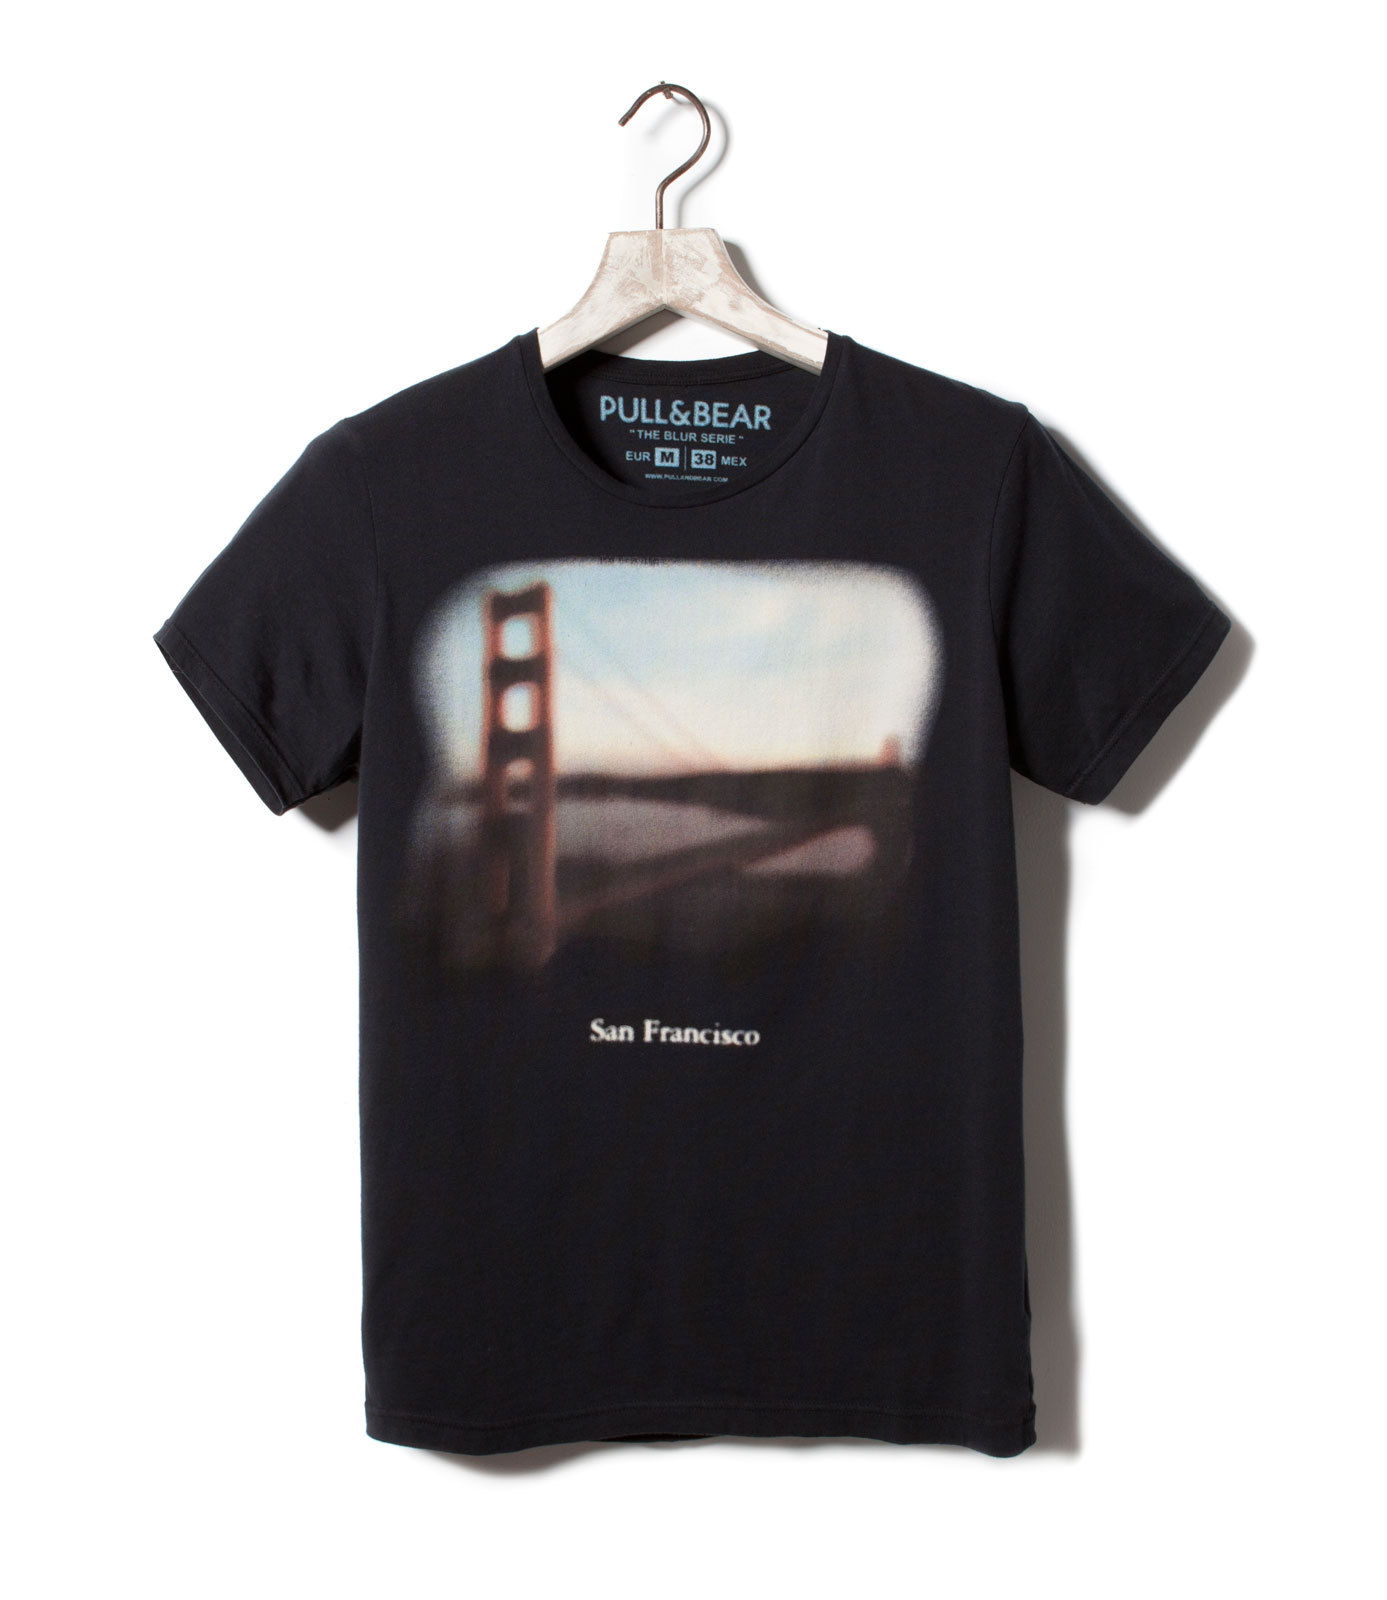 Pull and Bear Golden Gate T-shirt 2012.2.13 #1483 fotója